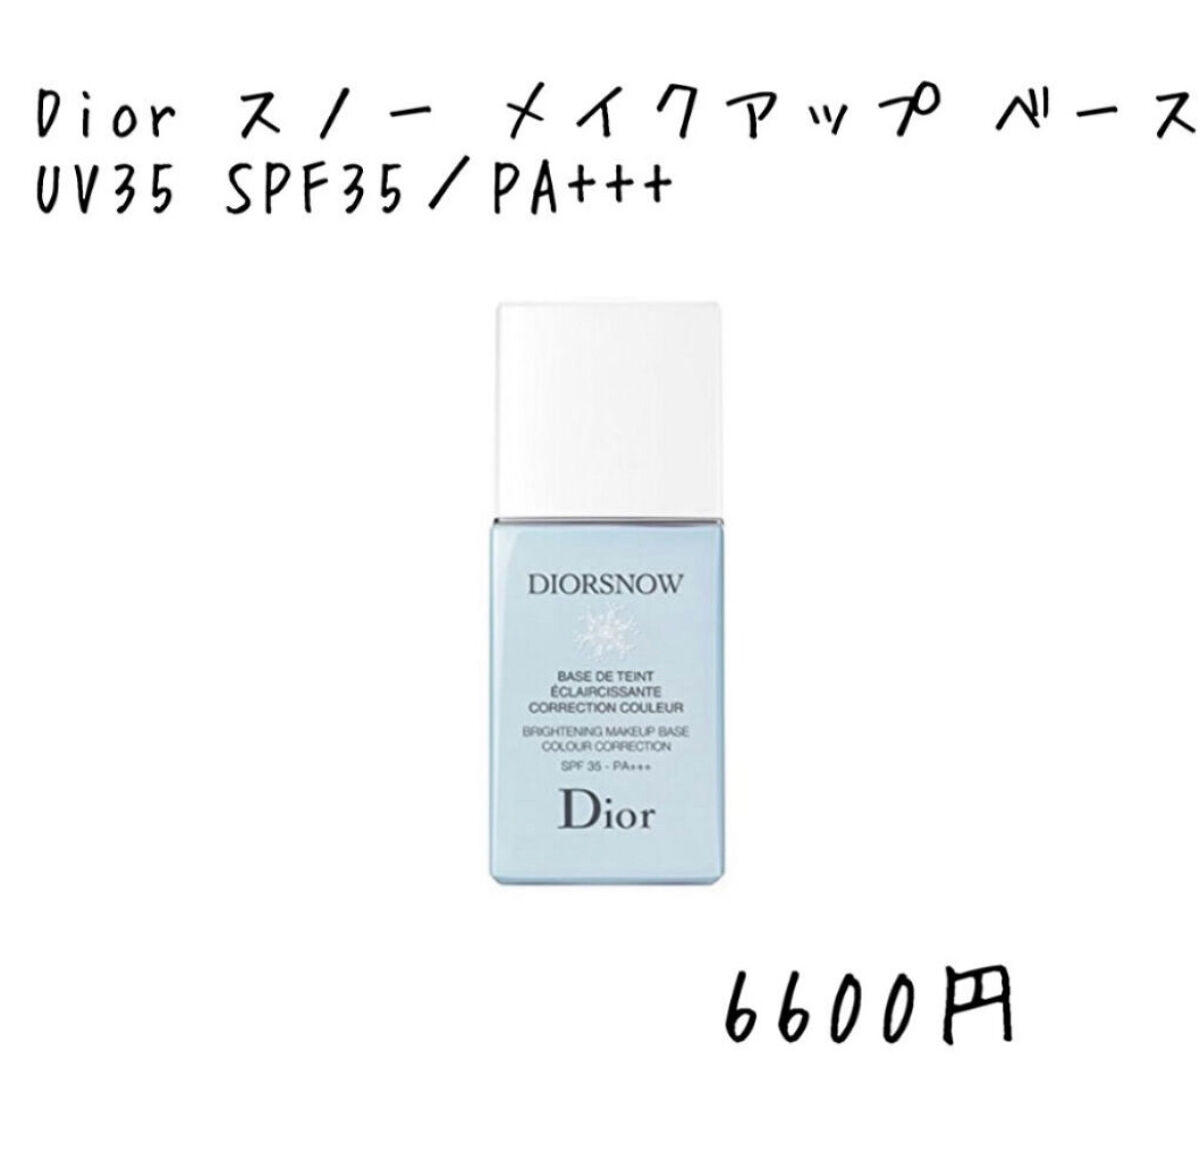 Dior・アスタリフト・ラ ロッシュ ポゼ・DECENCIA・LANCOME・ACSEINEのベースメイクを使った口コミ -今回は田中みな実さん愛用品~化粧下地~を紹介しようと思います☺️  by スヌーピー(脂性肌/20代前半) LIPS